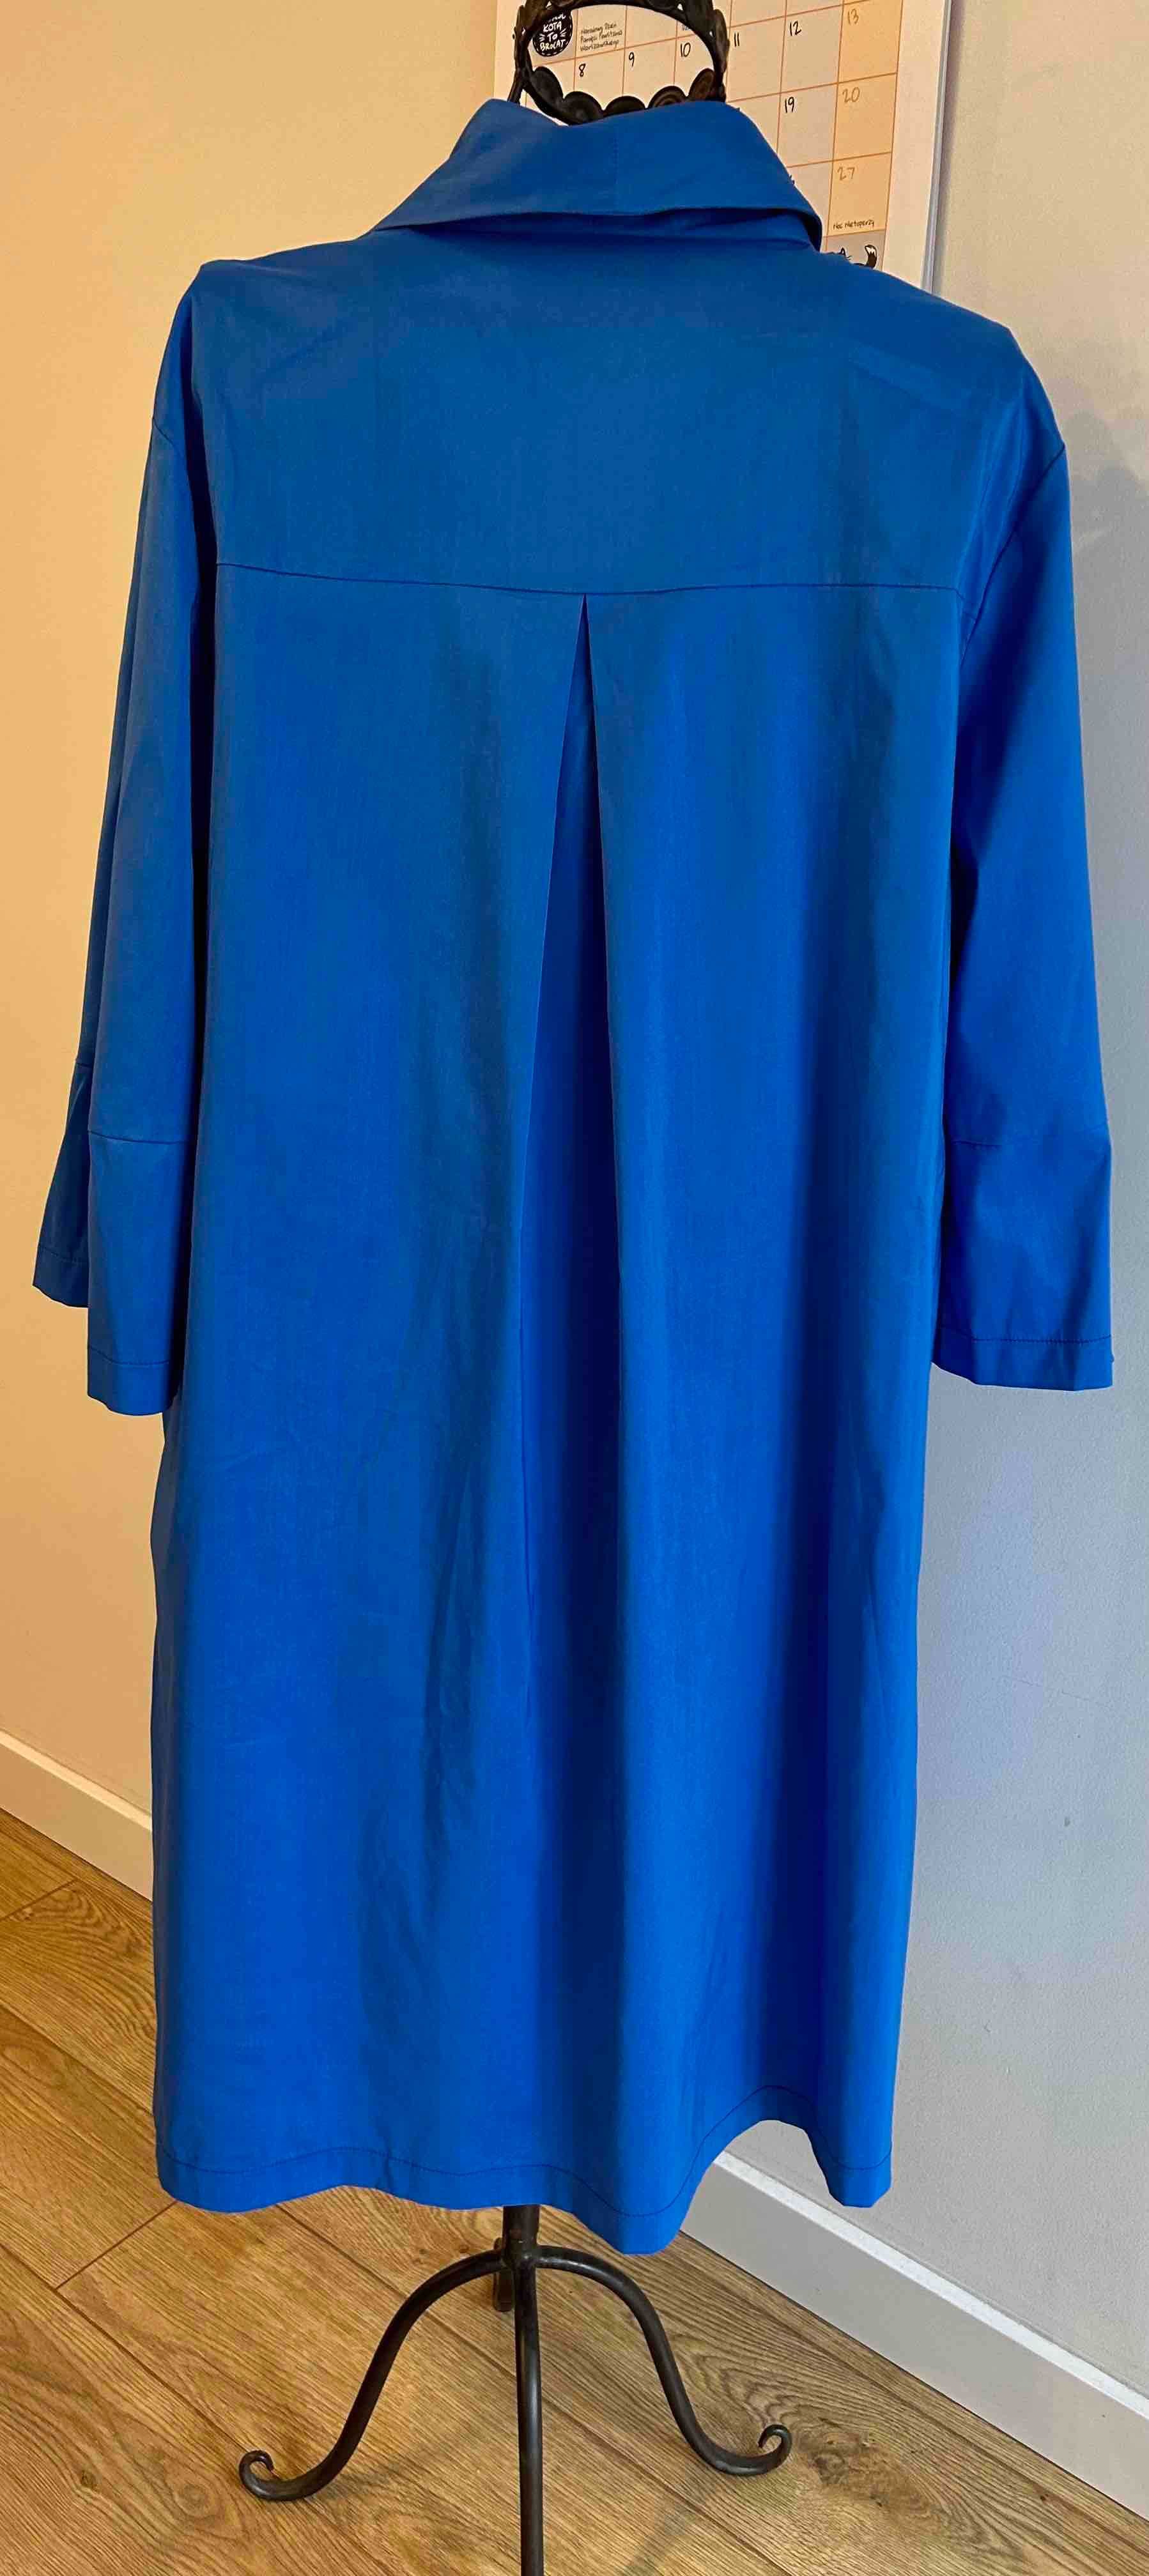 APANAGE sukienka błękitna z papugą, rozm. 44, NOWA